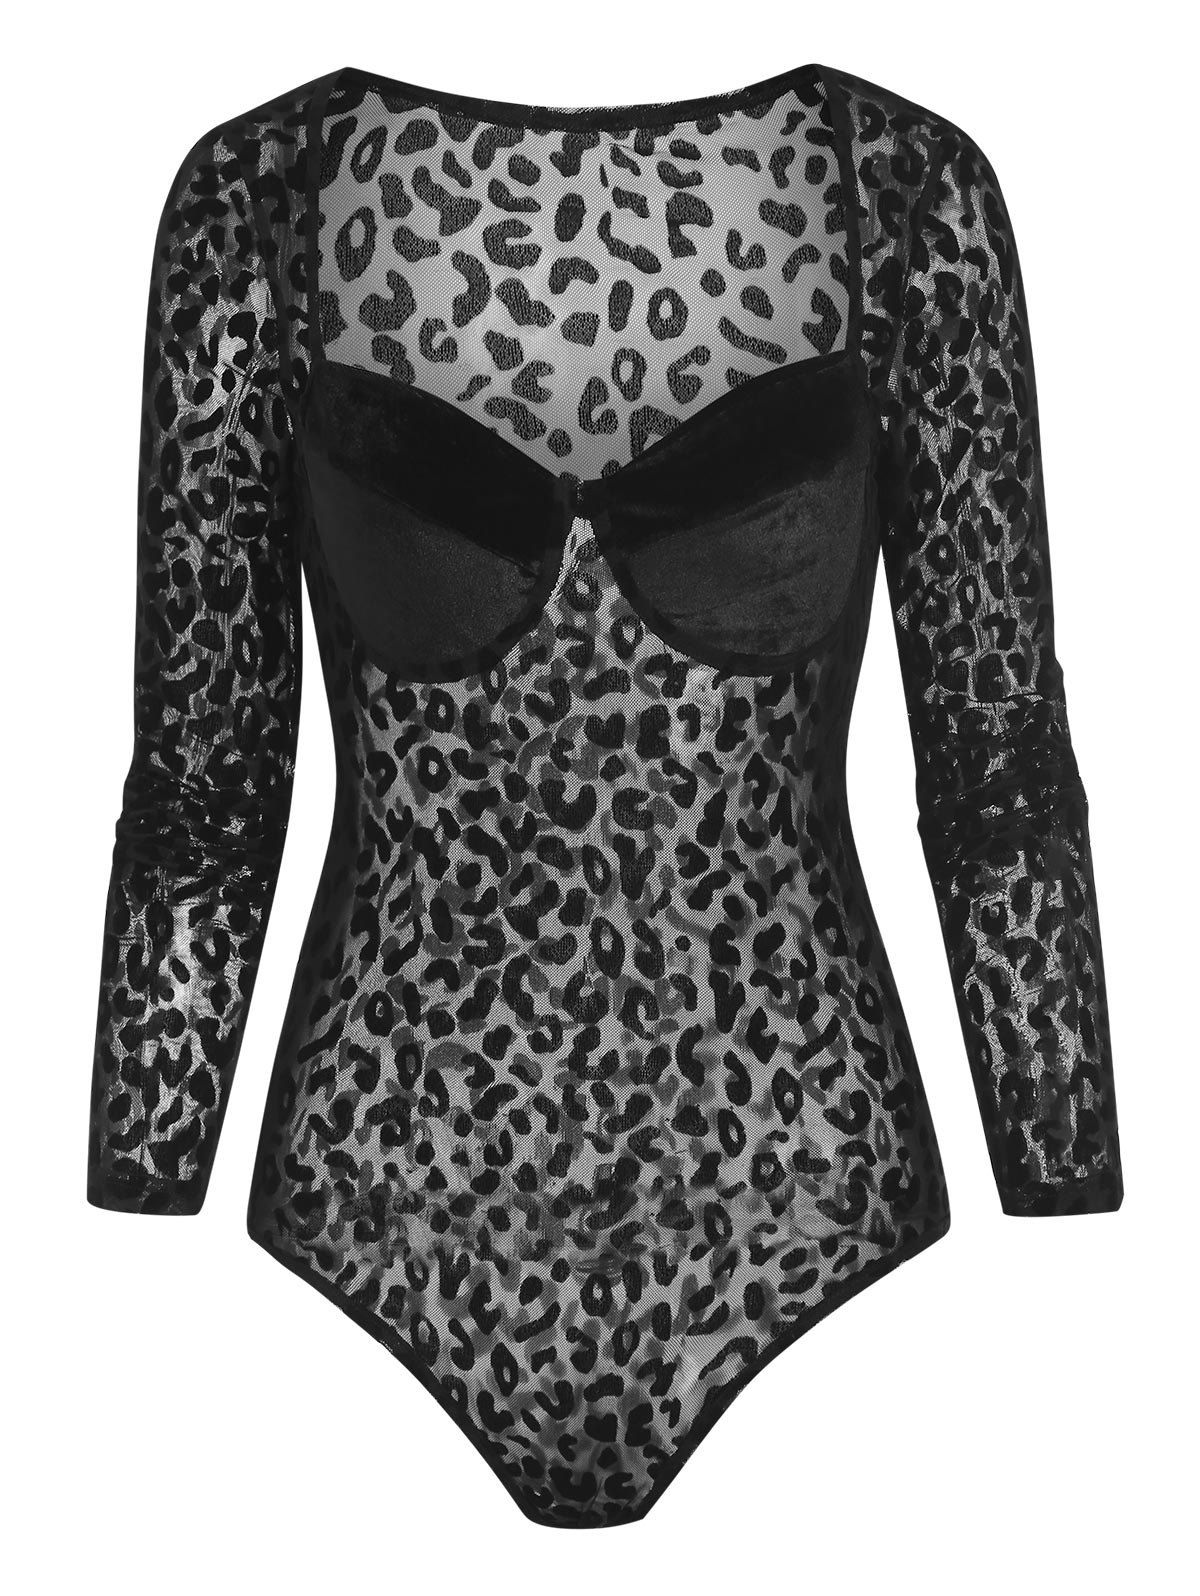 Leopard Mesh Velour Cupped Bodysuit - BLACK L